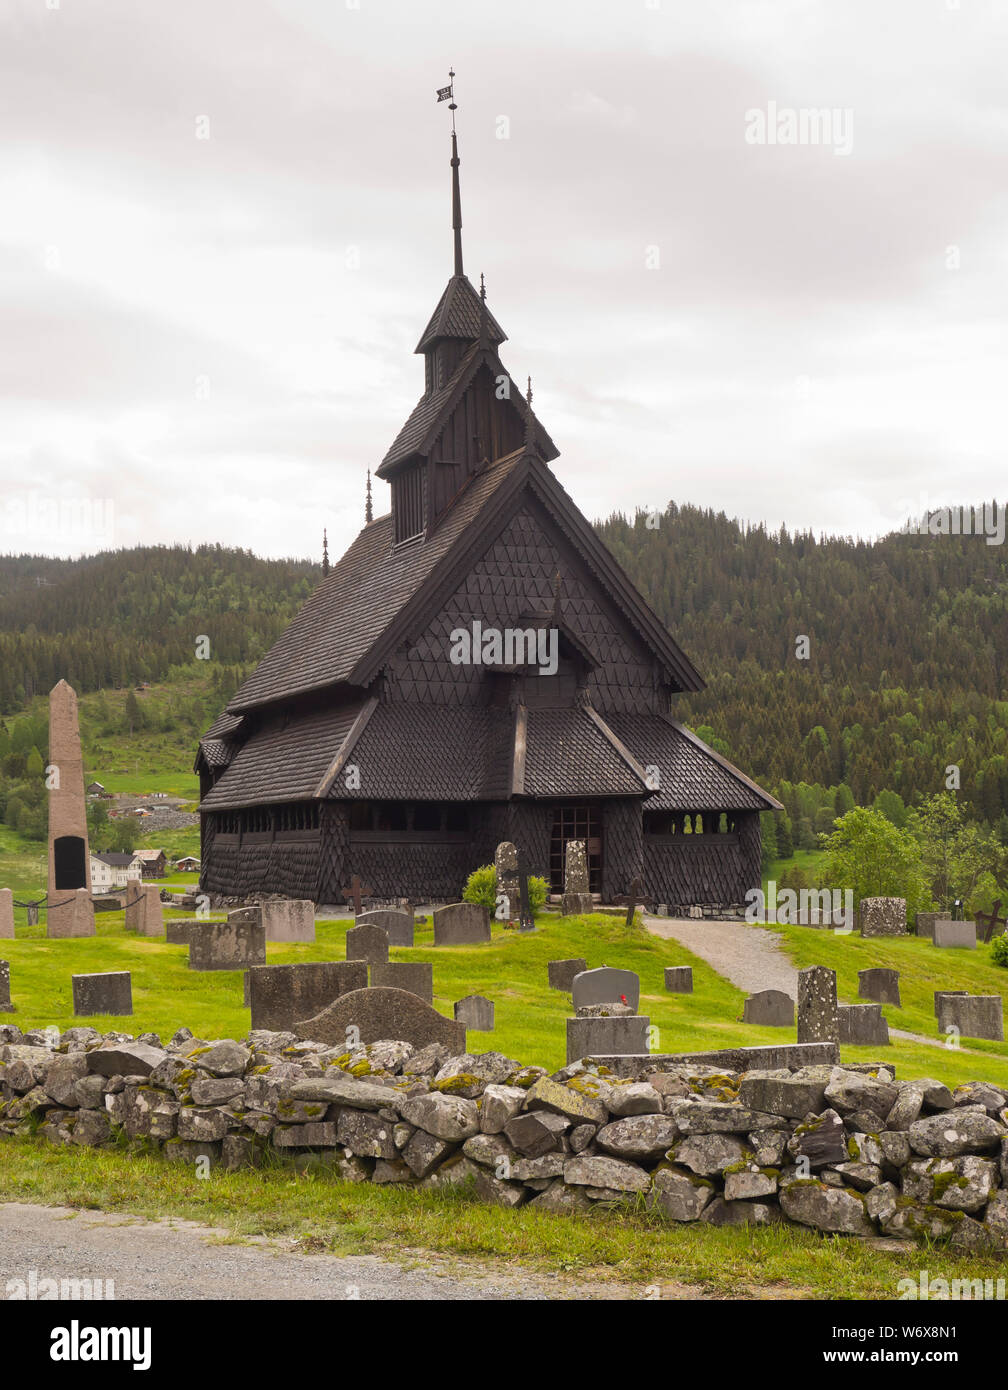 Eidsborg Stave church à partir de la période médiévale, un premier exemple de l'architecture en bois norvégien et une attraction touristique entouré de son cimetière Banque D'Images